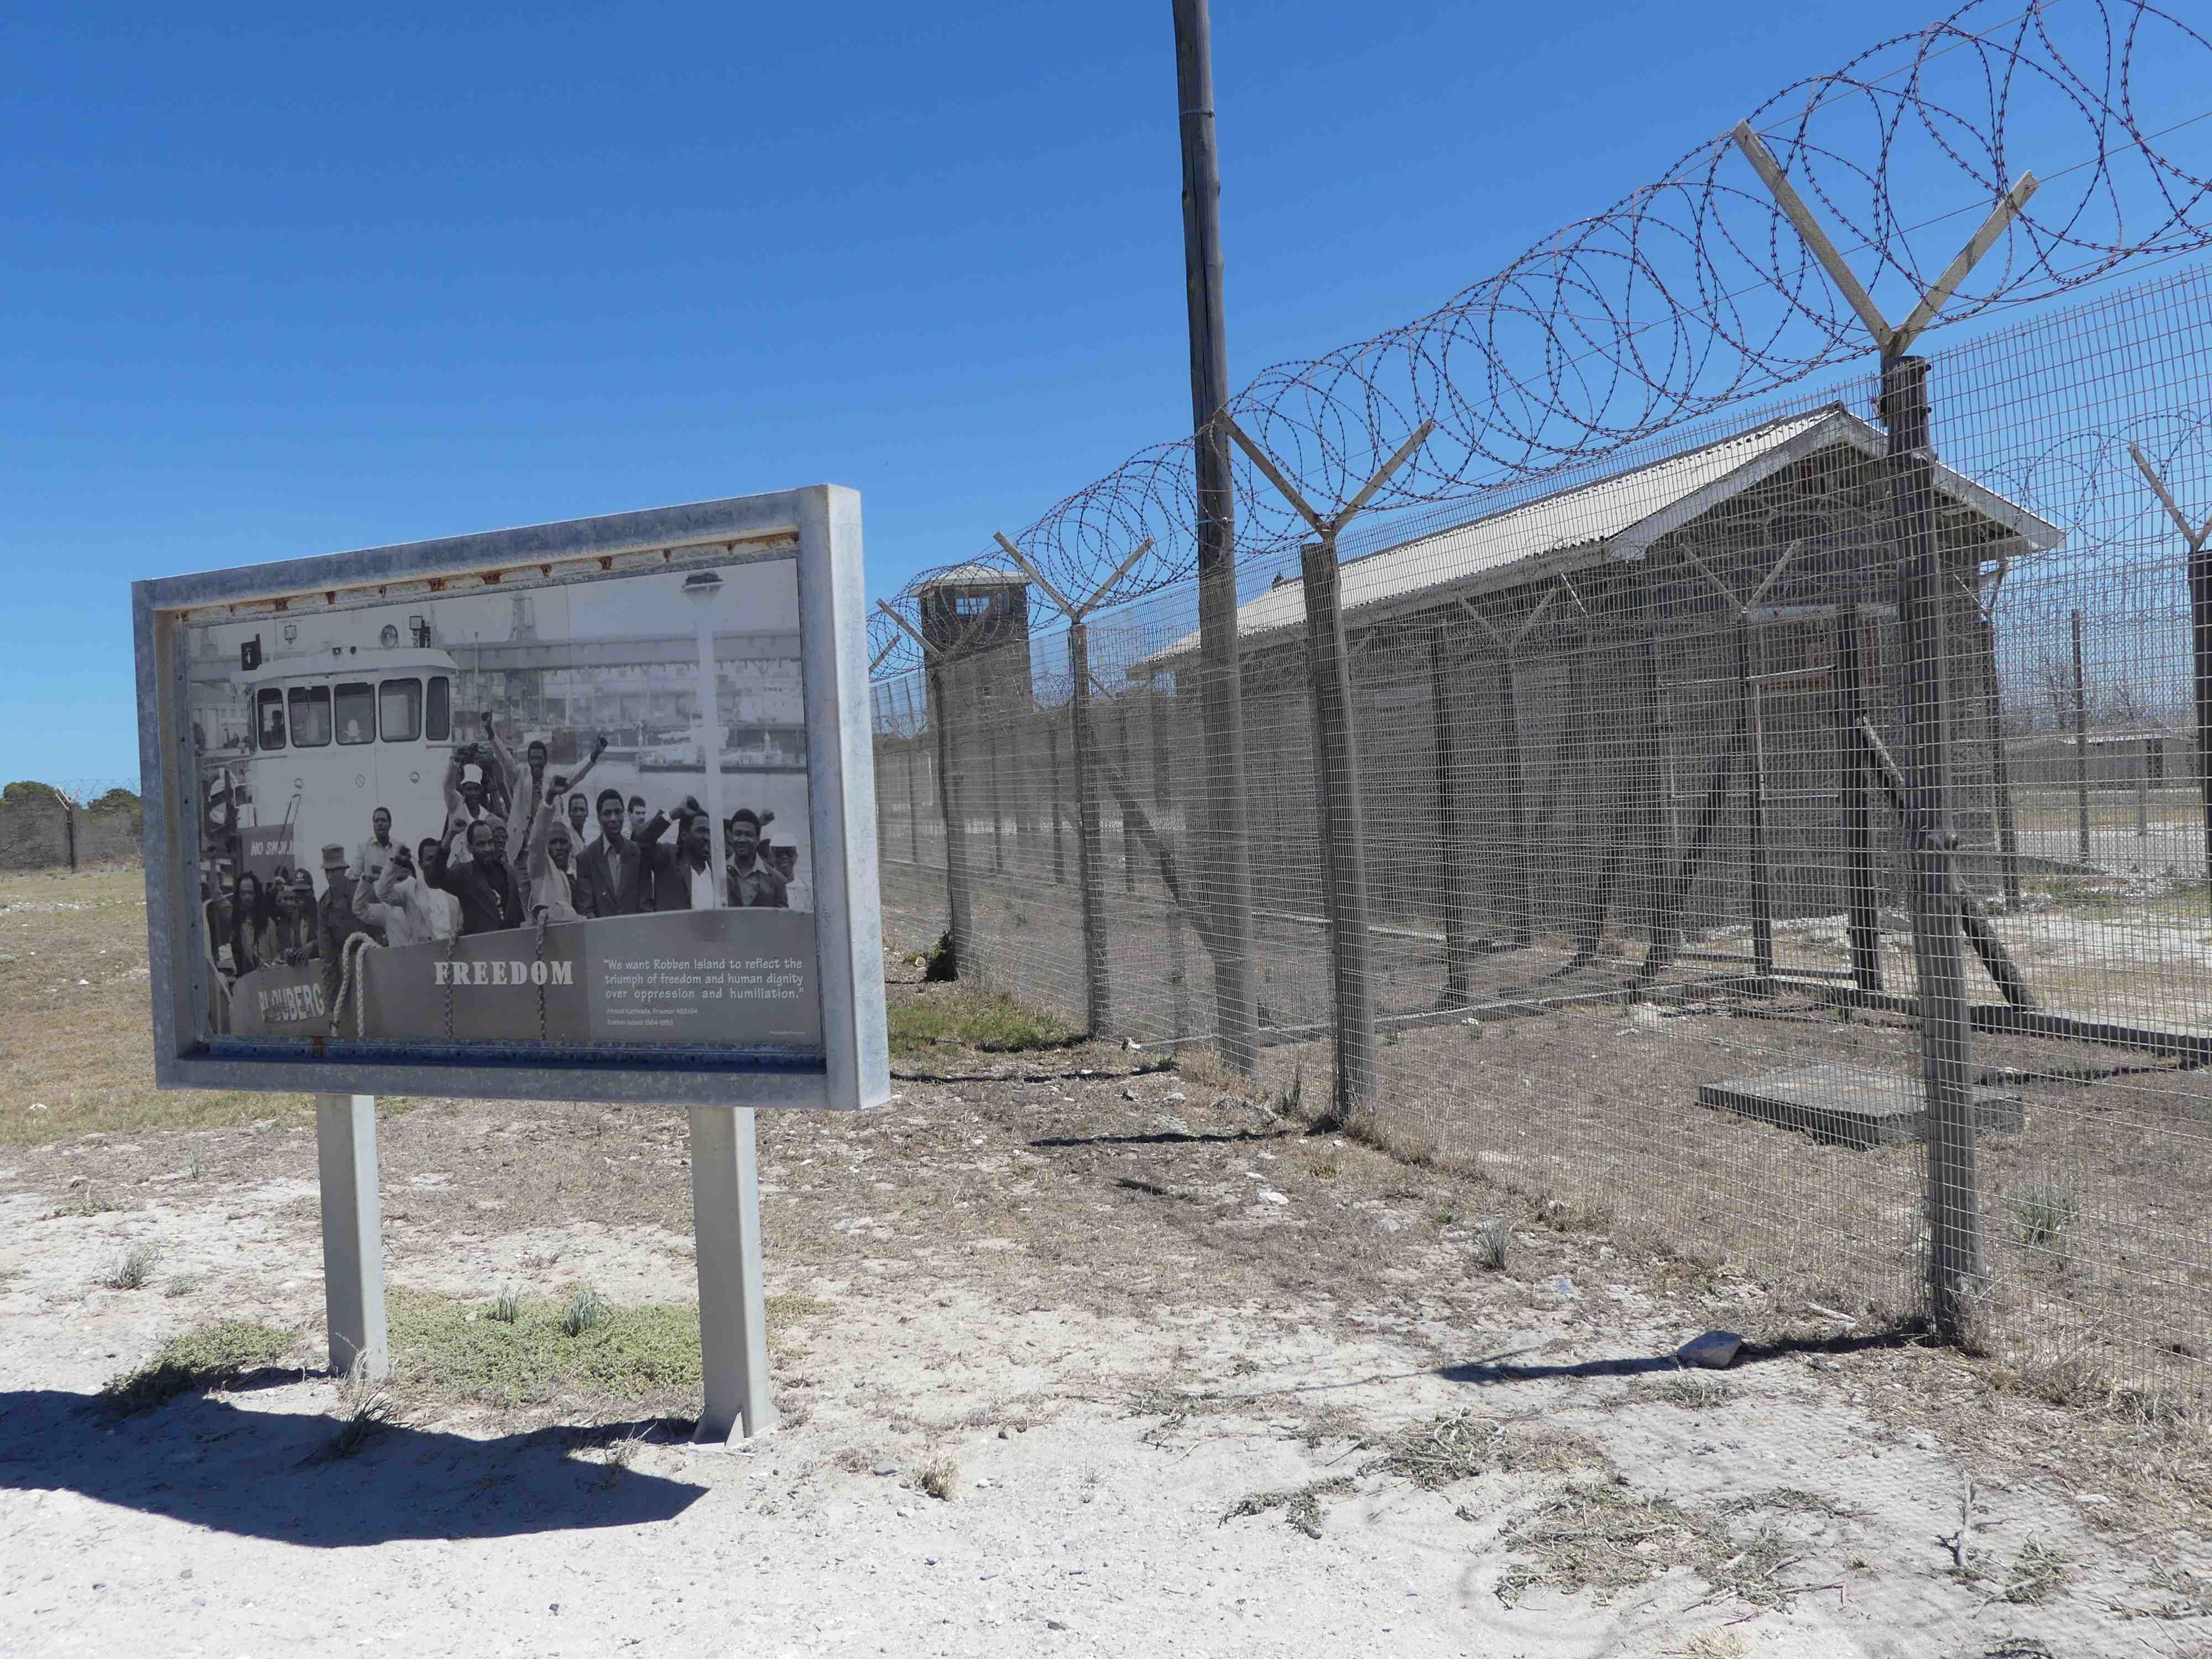 Robben Island - Prison